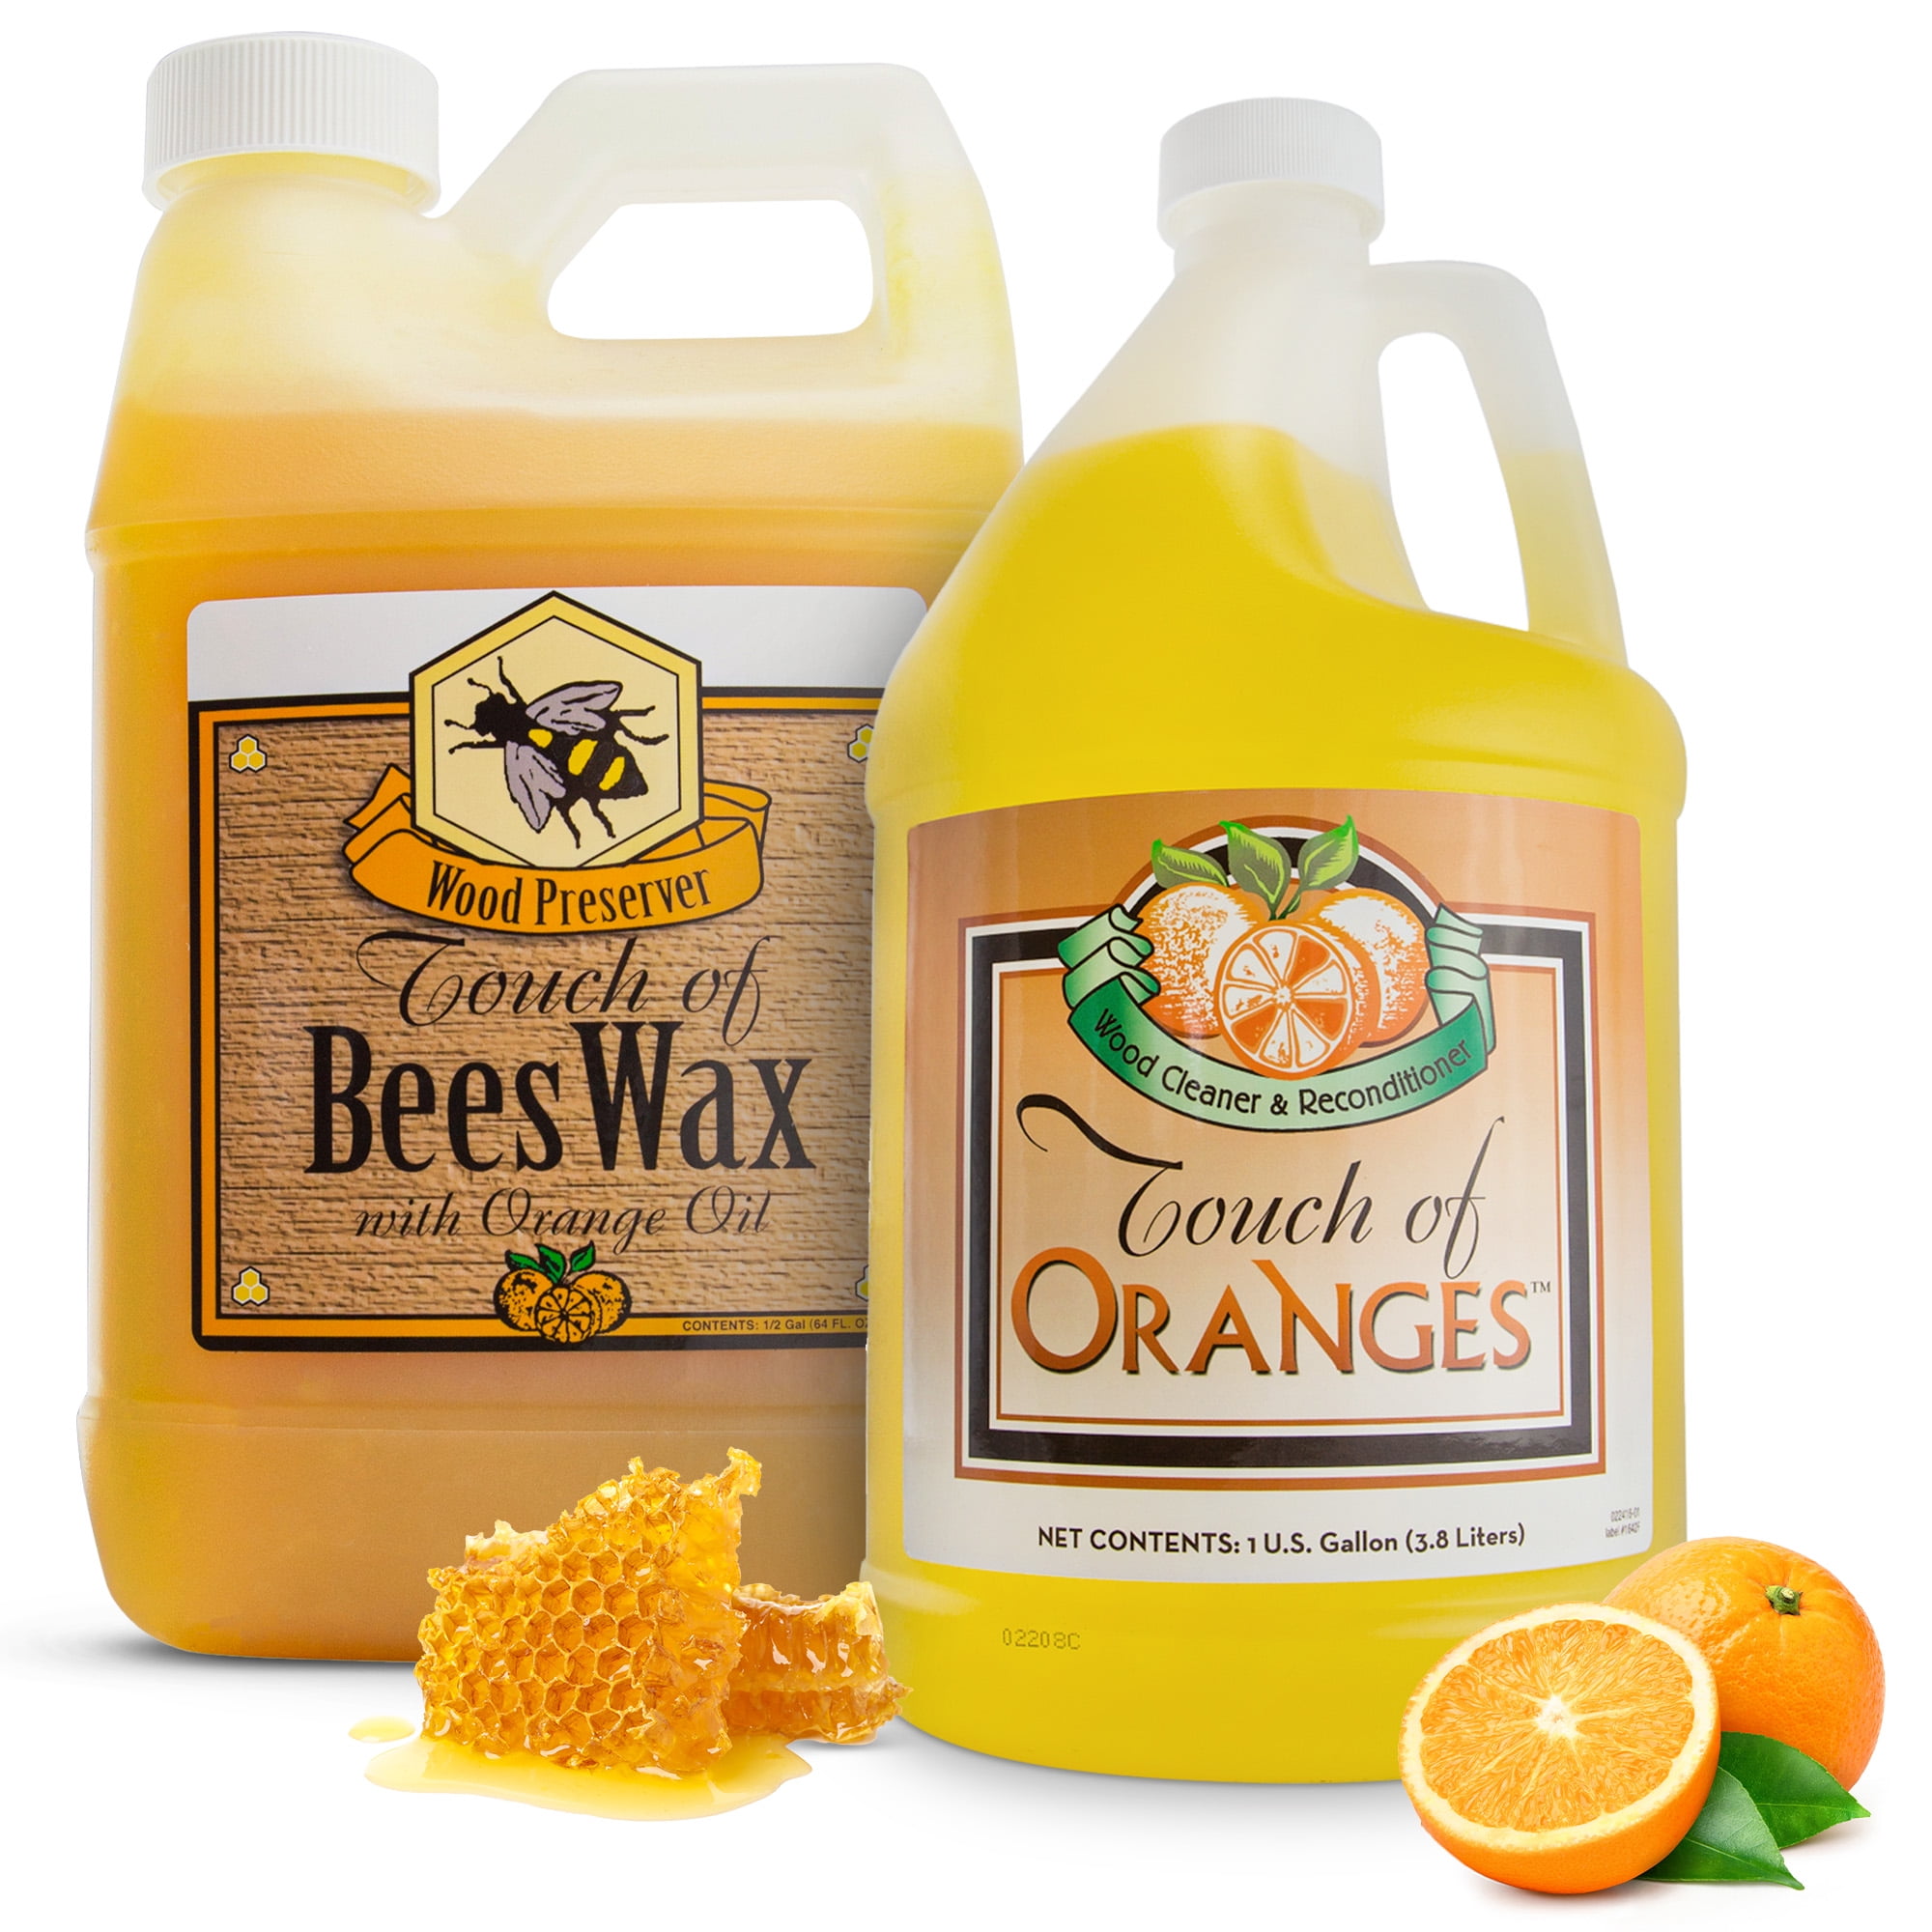 PRO-BRANDS Orange Glo Natural Citrus Cleaner/Degreaser - 5 Gal